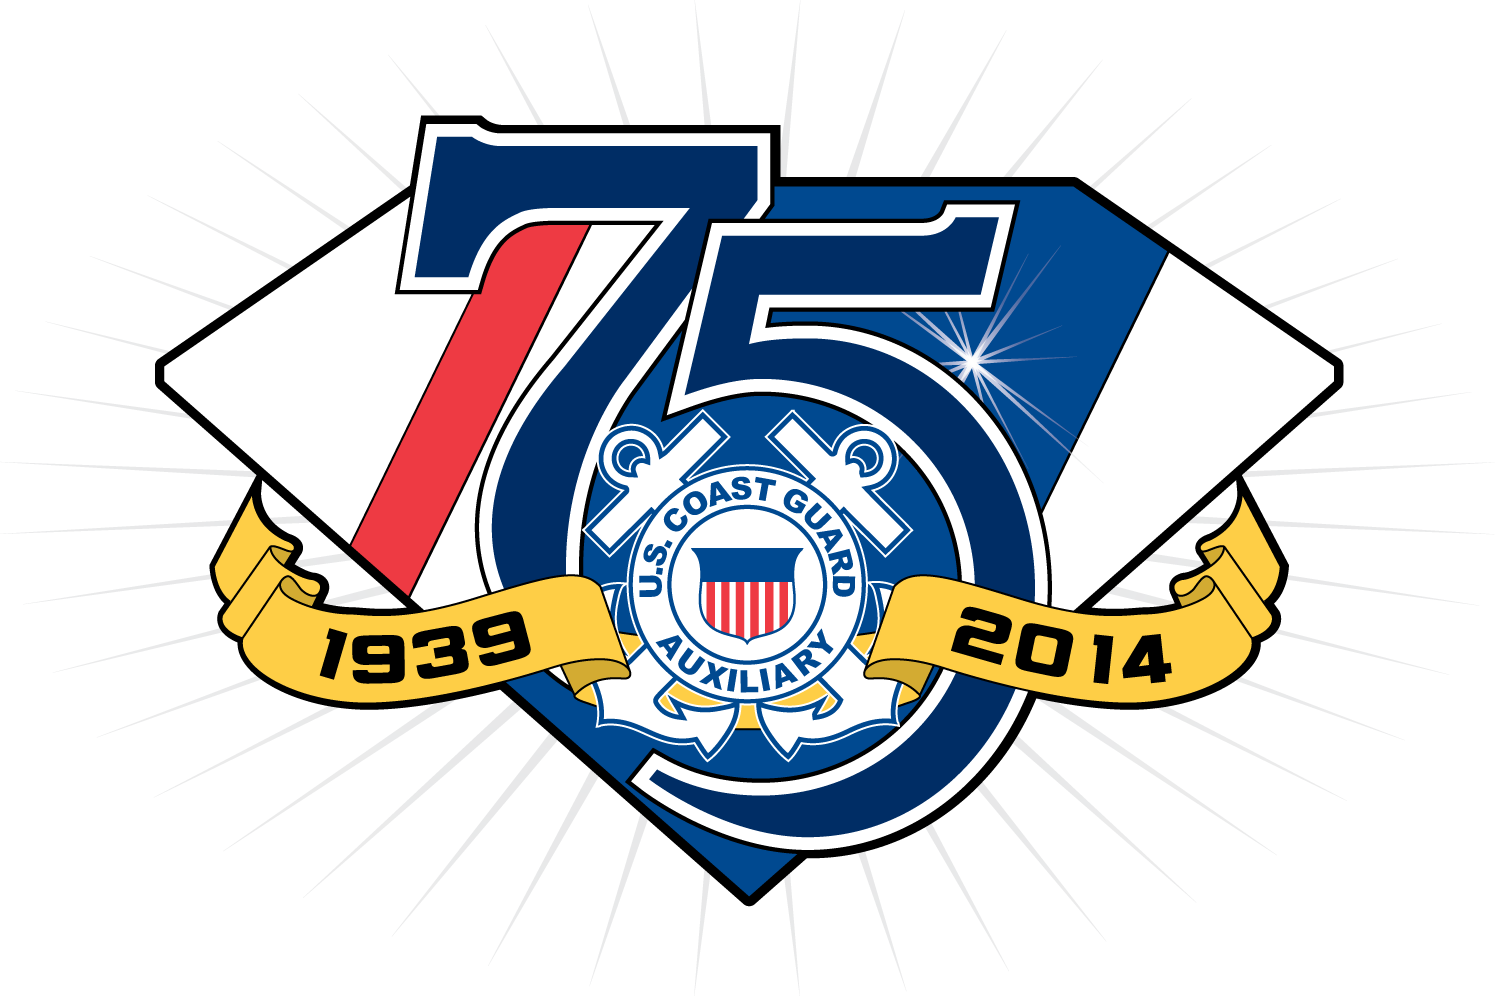 75 years anniversary logo